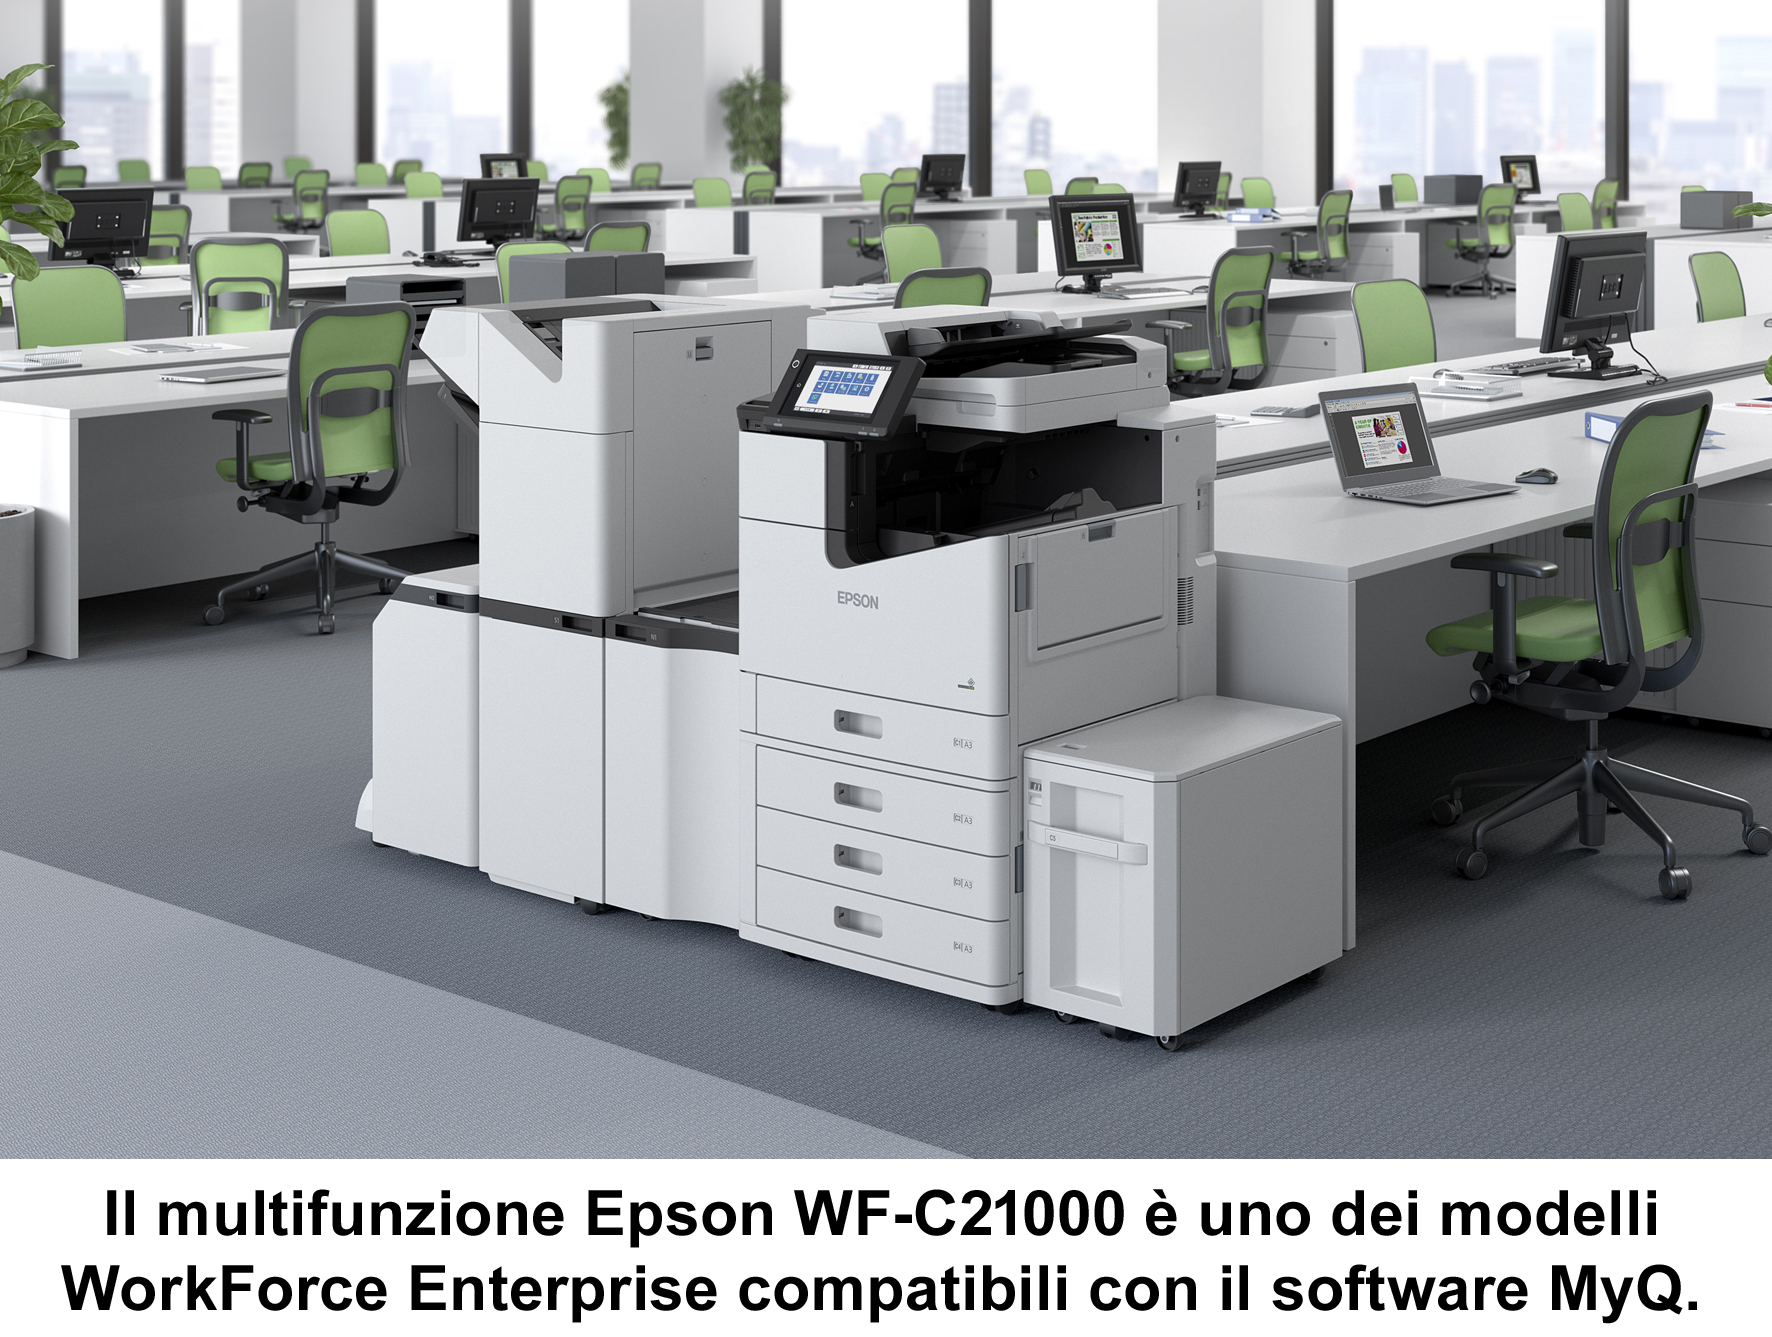 La partnership Epson-MyQ semplifica l'integrazione delle flotte di stampanti